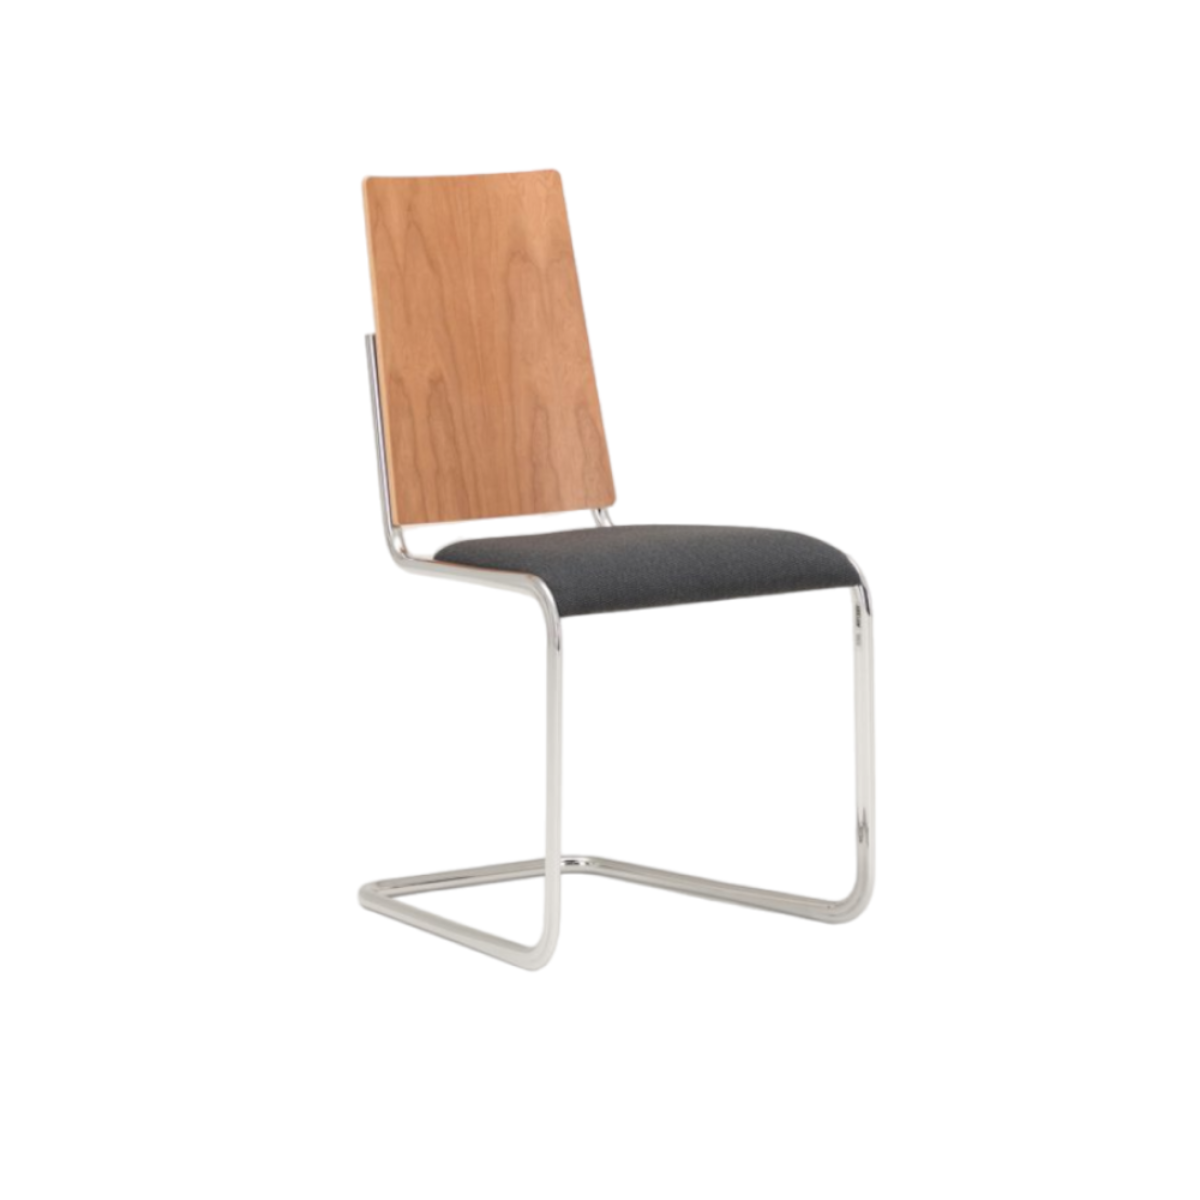 TECTA B17 Cantilever Chair - Cherry